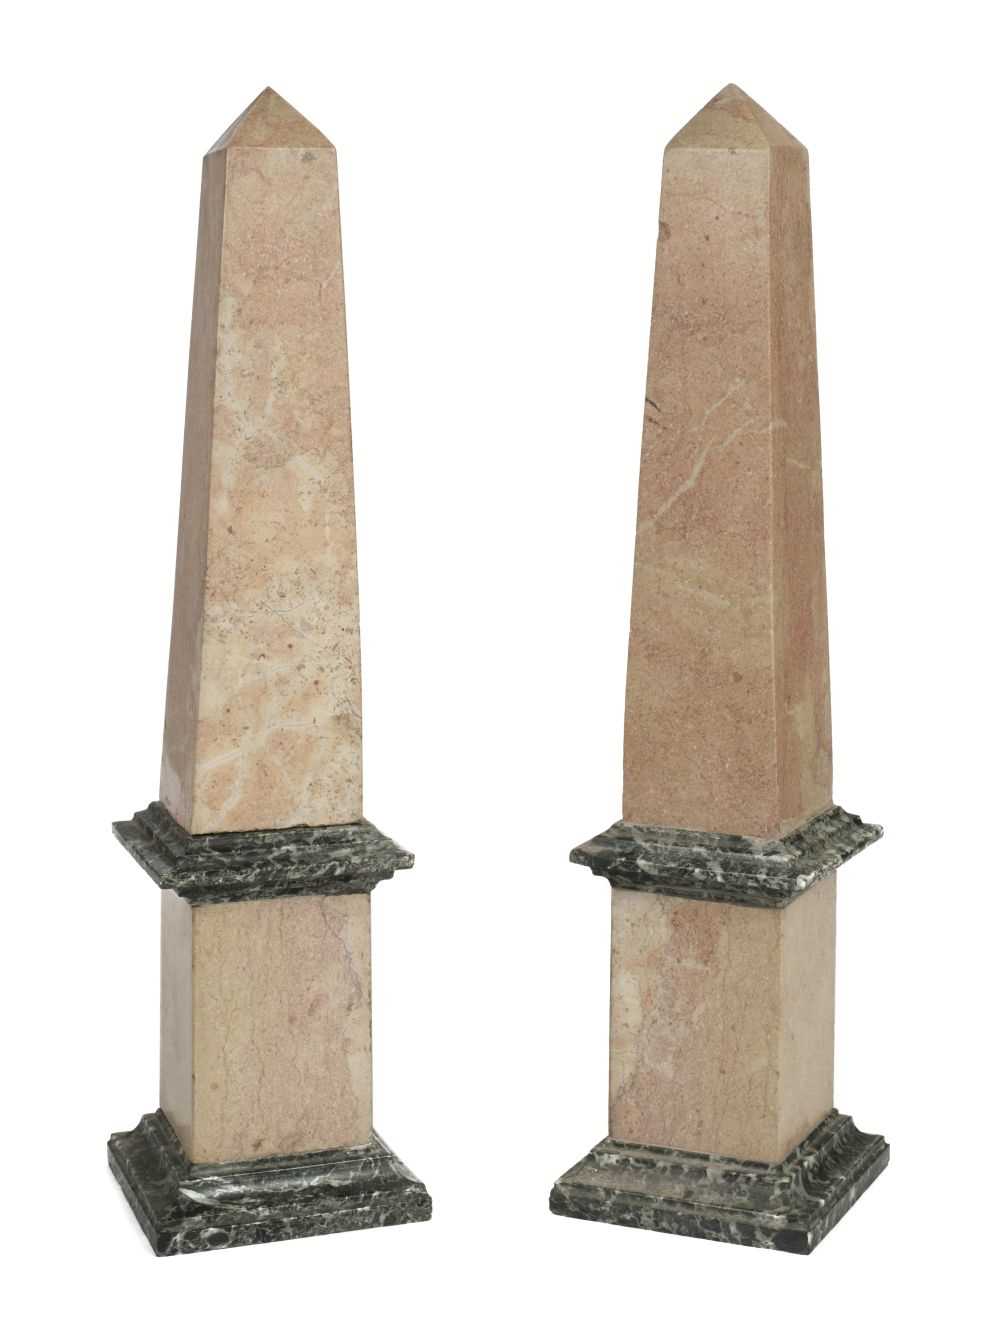 Lot 27 - Obelisks. A pair of modern marble obelisks